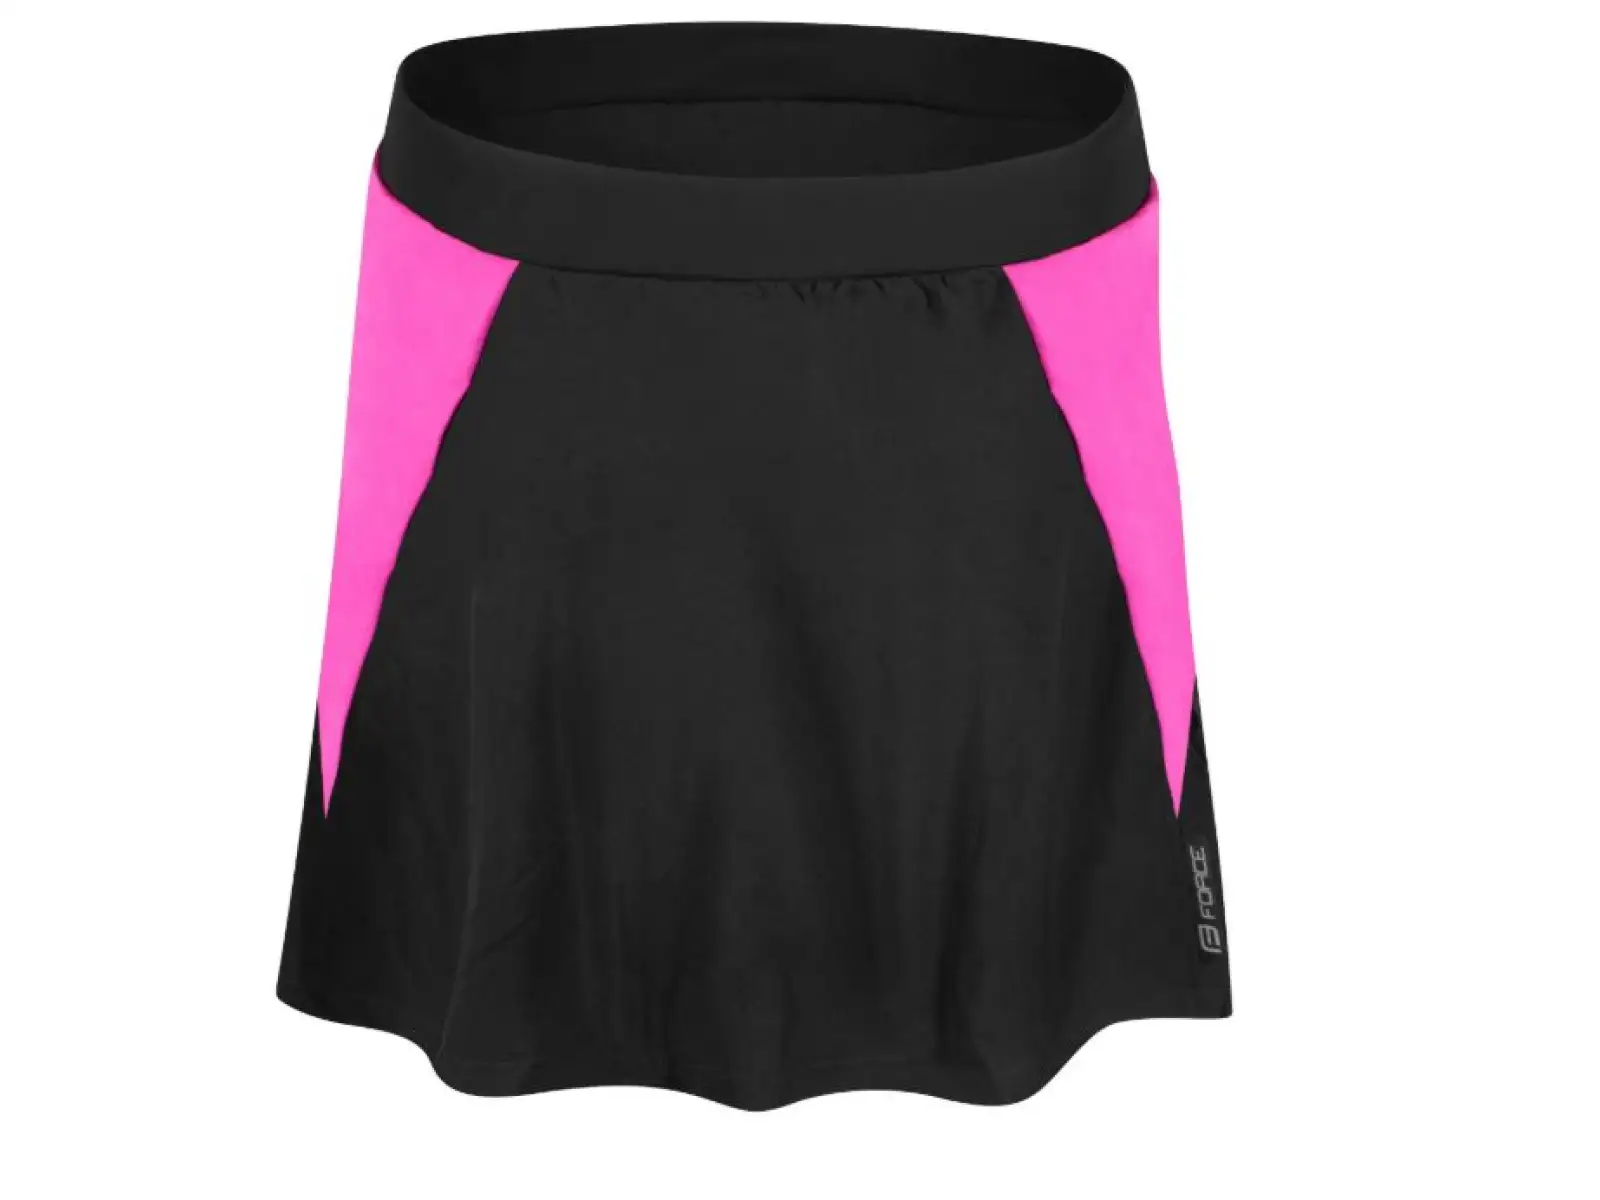 Force Daisy dámská cyklistická sukně s vložkou černá/růžová